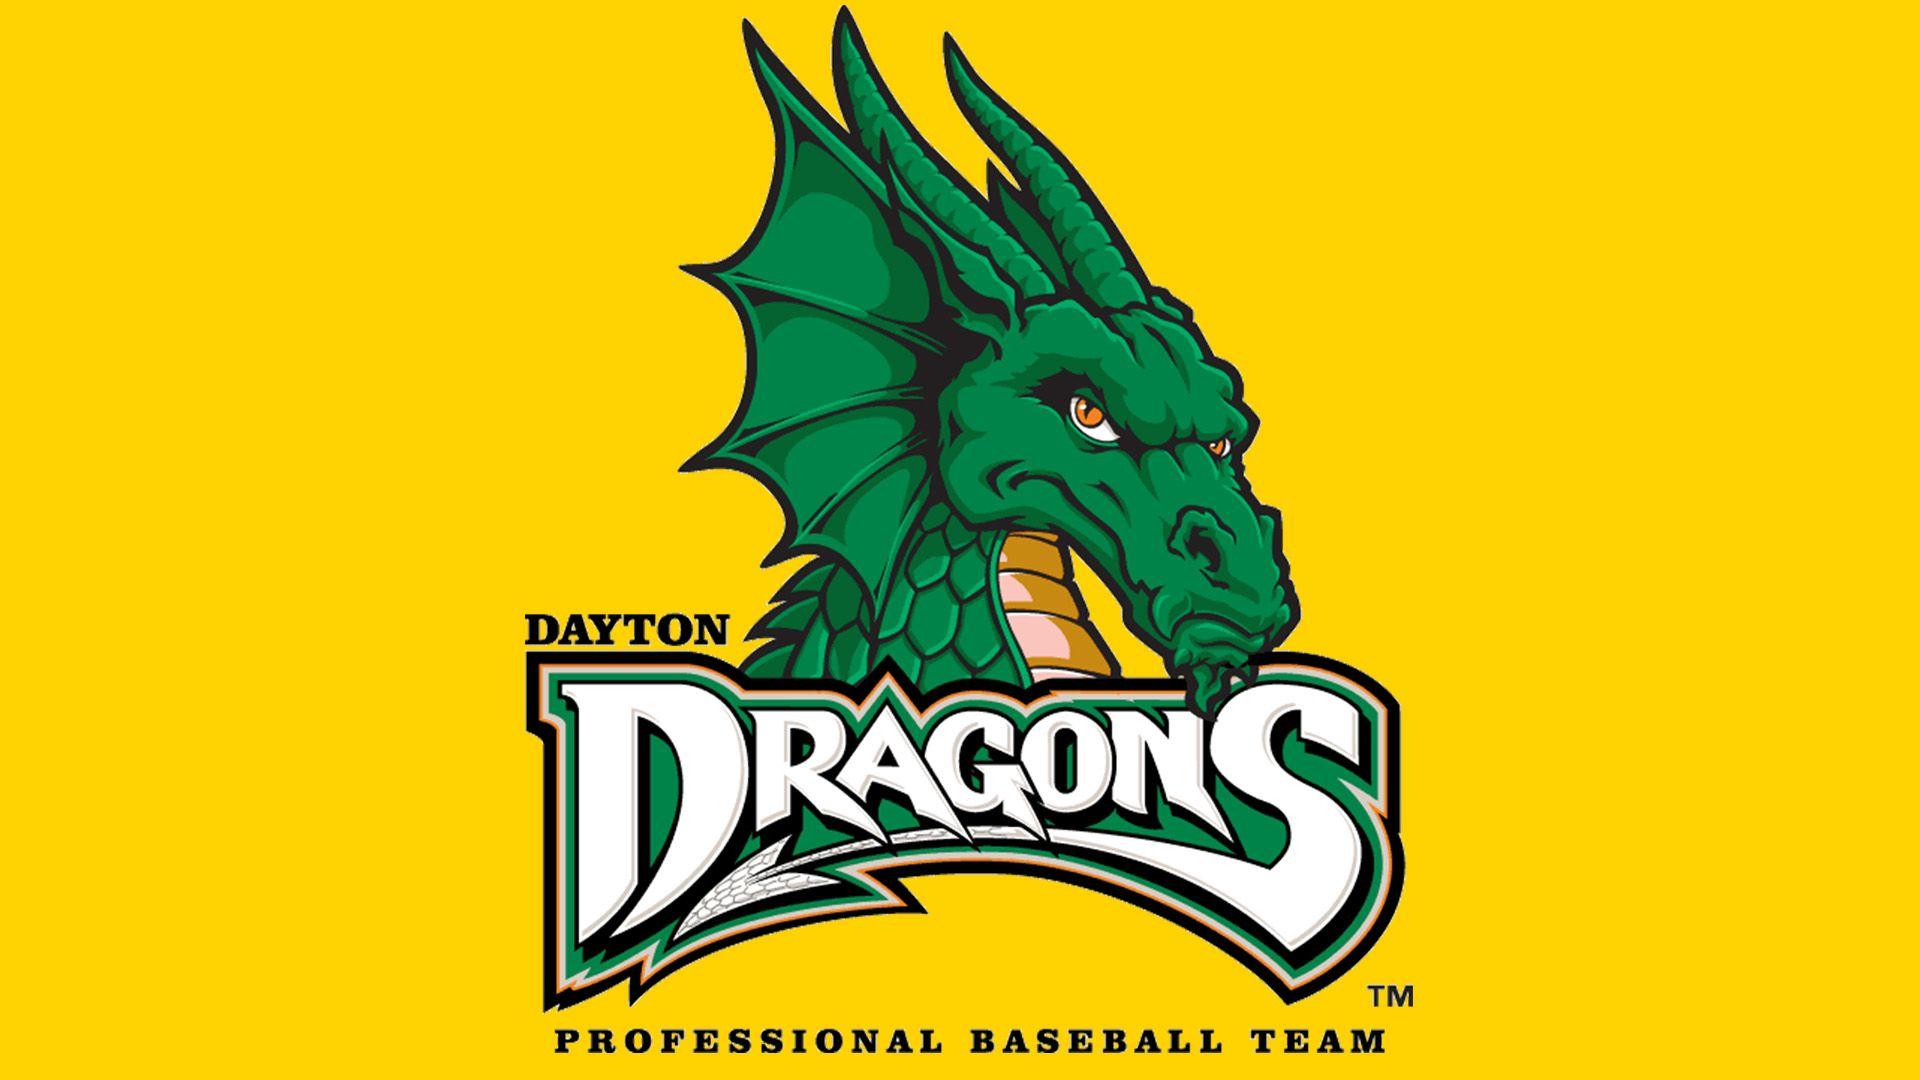 Dayton Dragons Logo - Dayton Dragons logo, symbol, meaning, History and Evolution